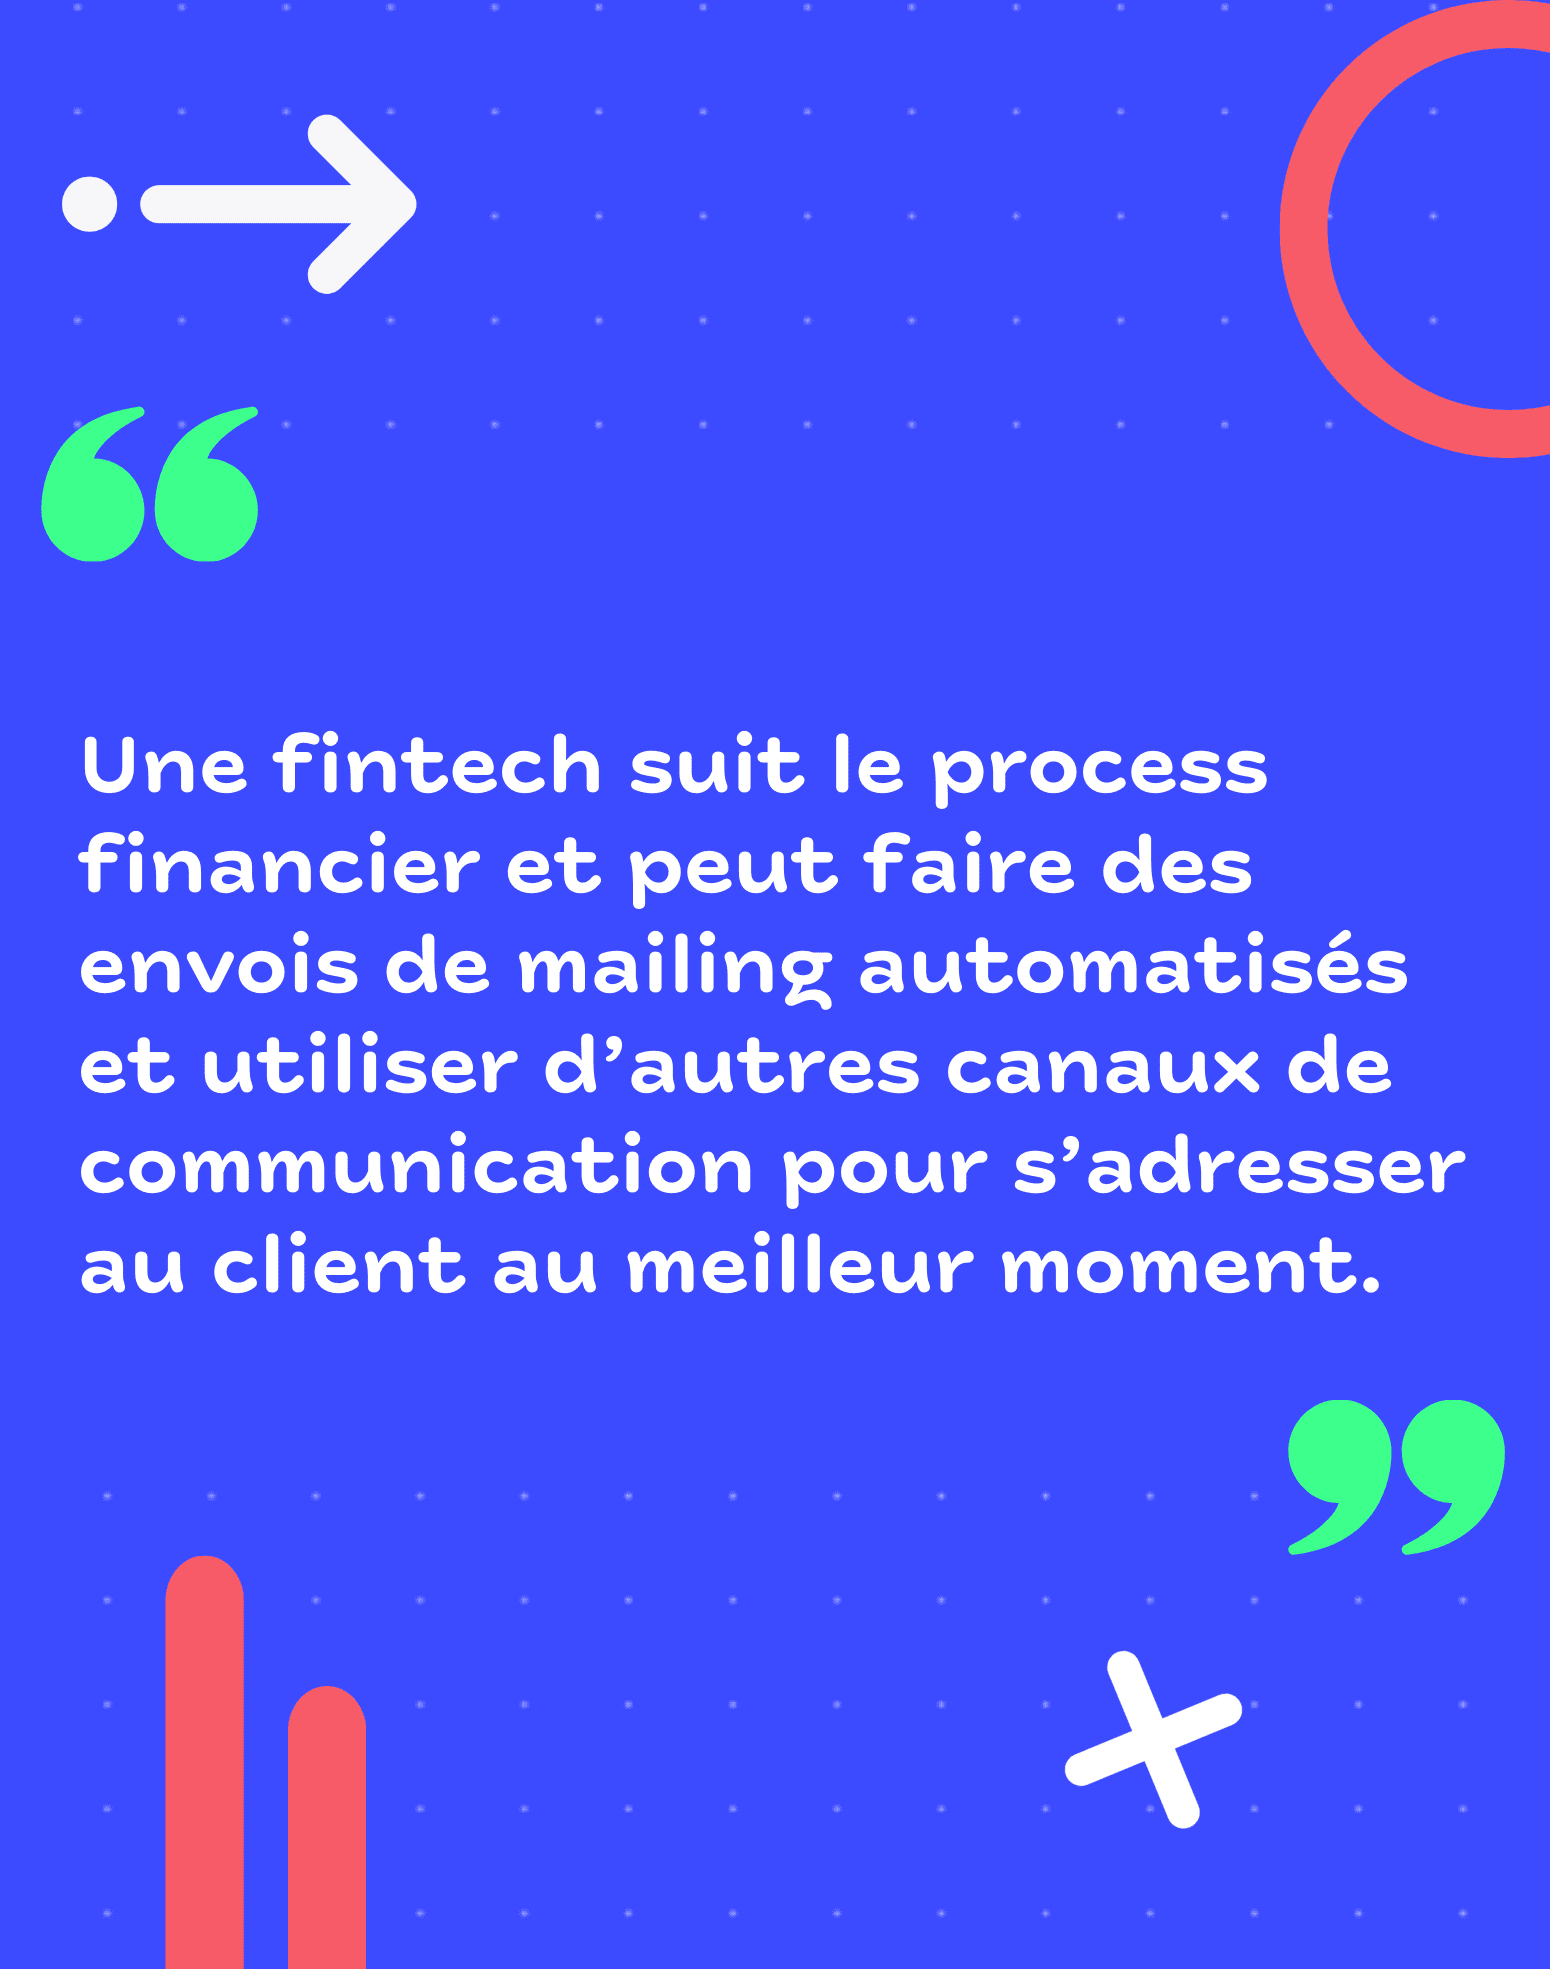 Une fintech suit le process financier et peut faire des envois de mailing automatisés et utiliser d'autres canaux de communication pour s'adresser au client au meilleur moment. 